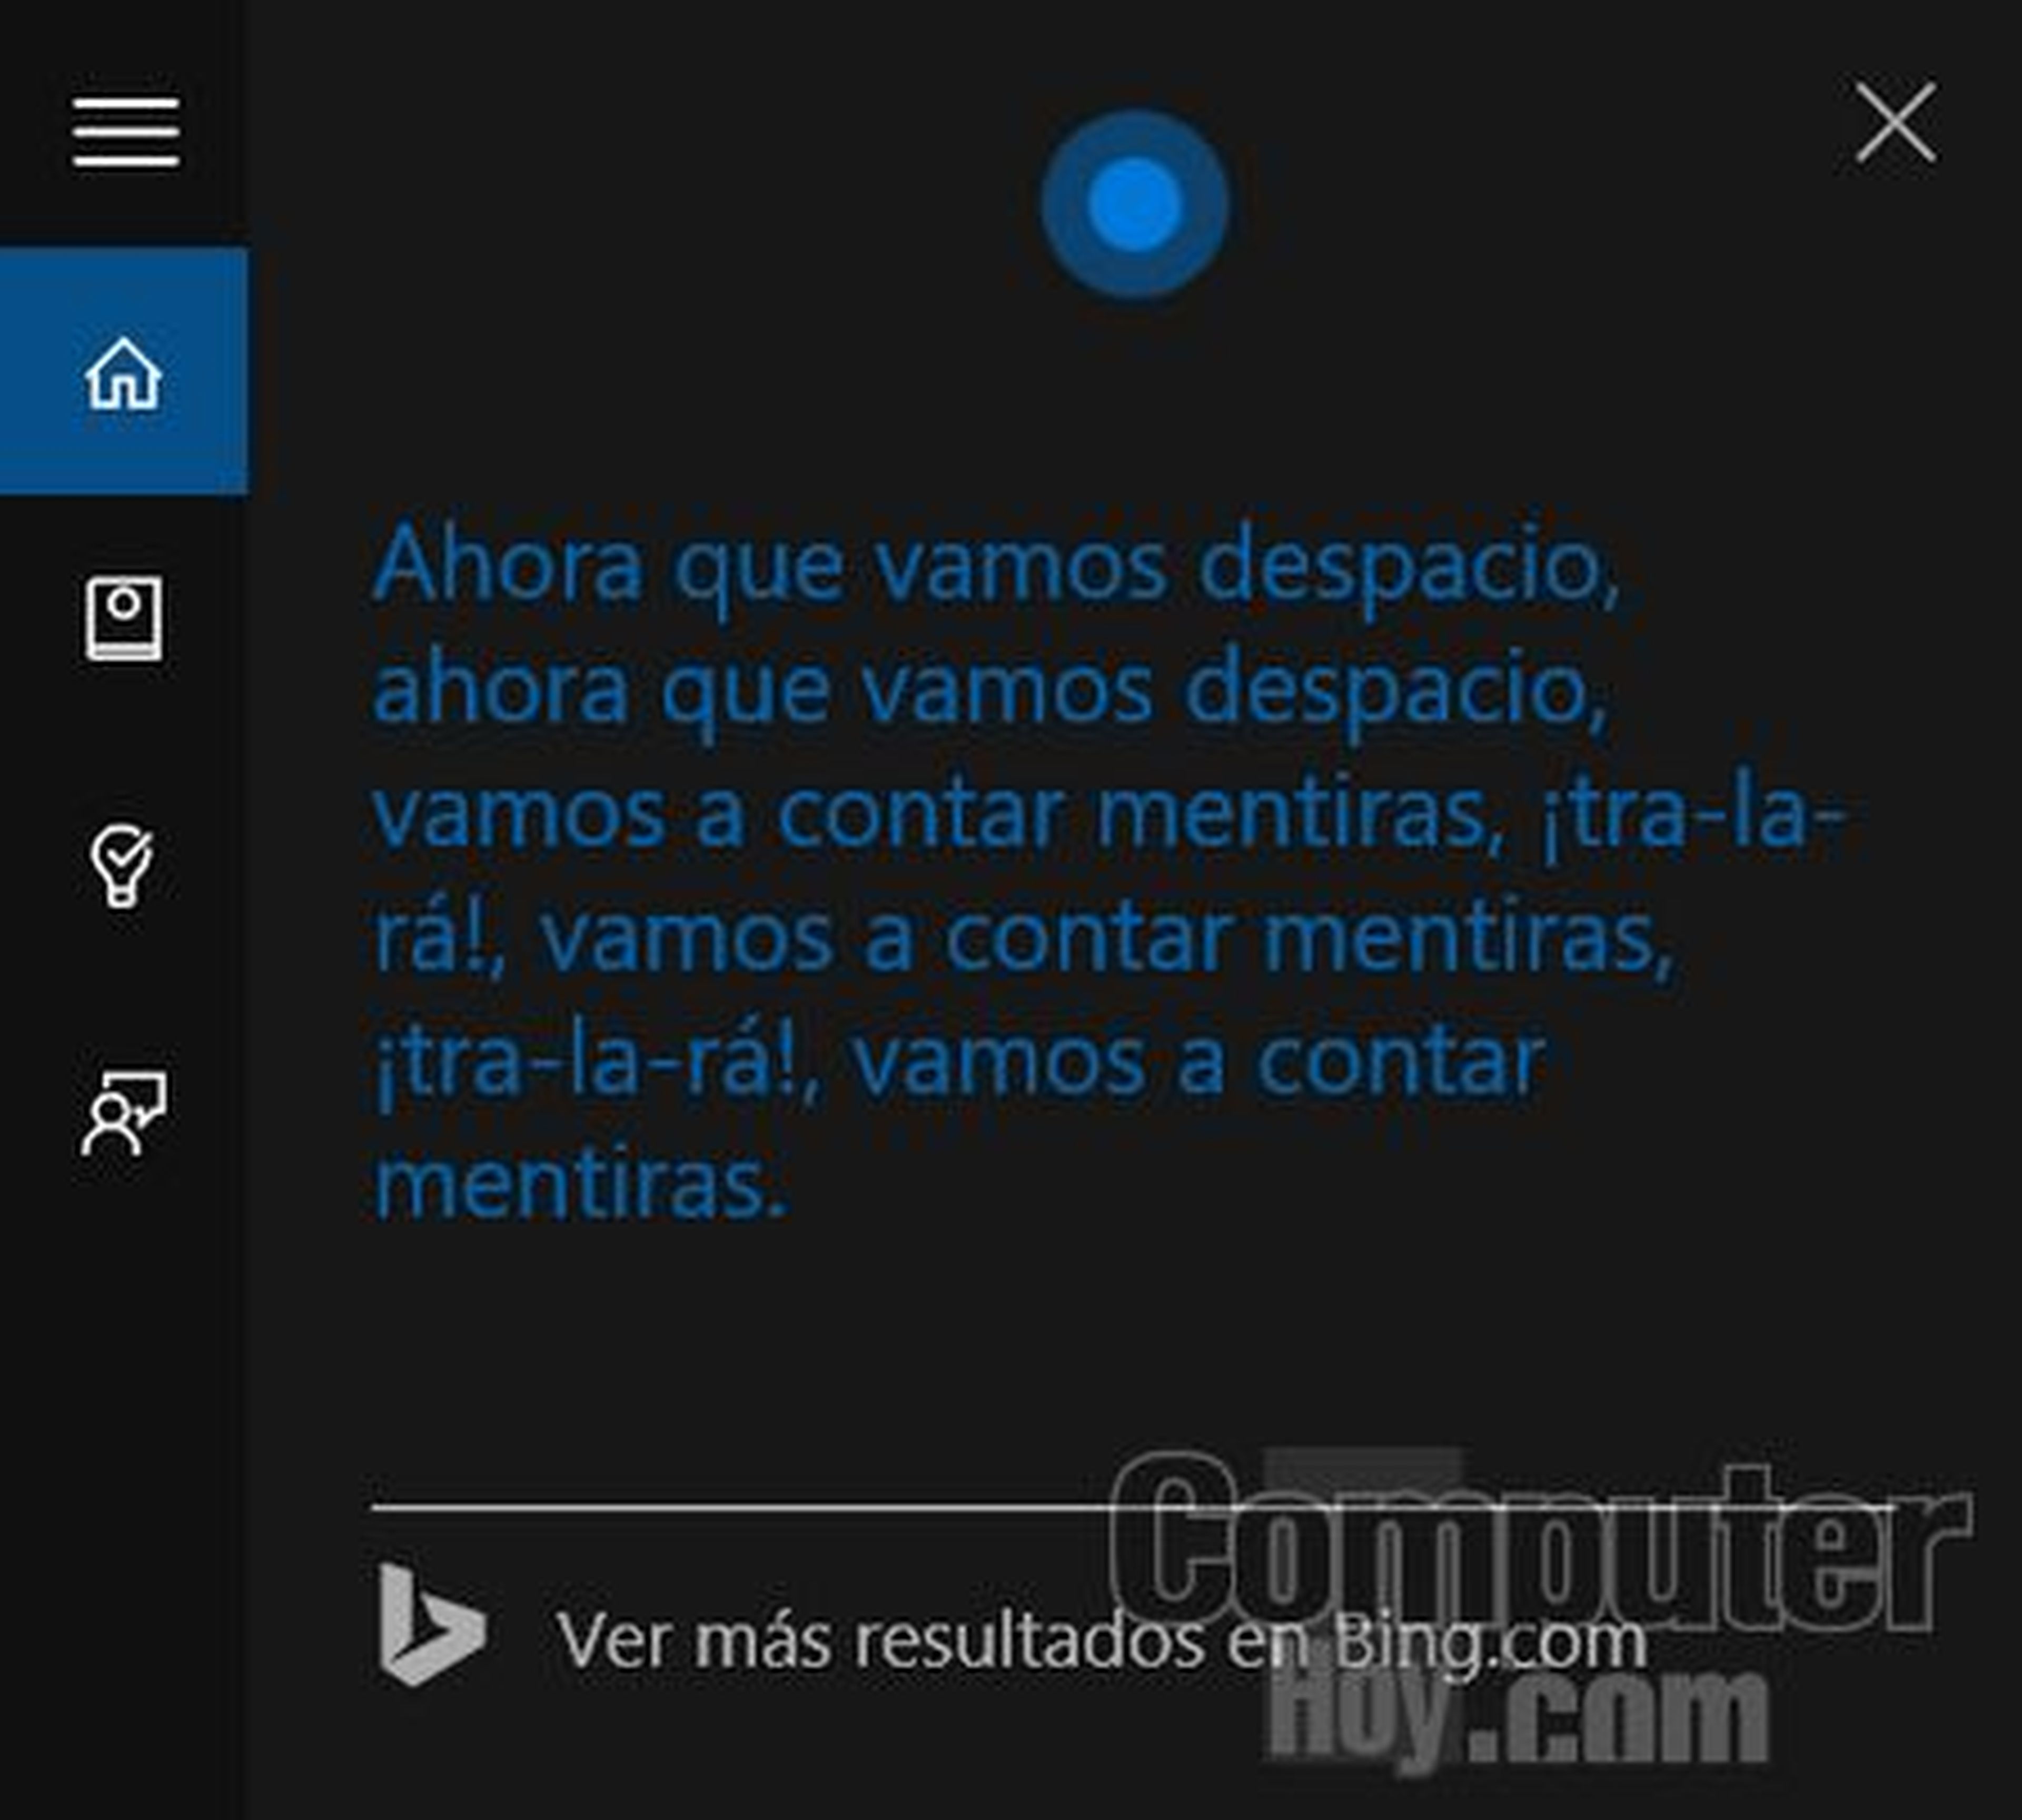 Los mejores trucos de Cortana para Windows 10